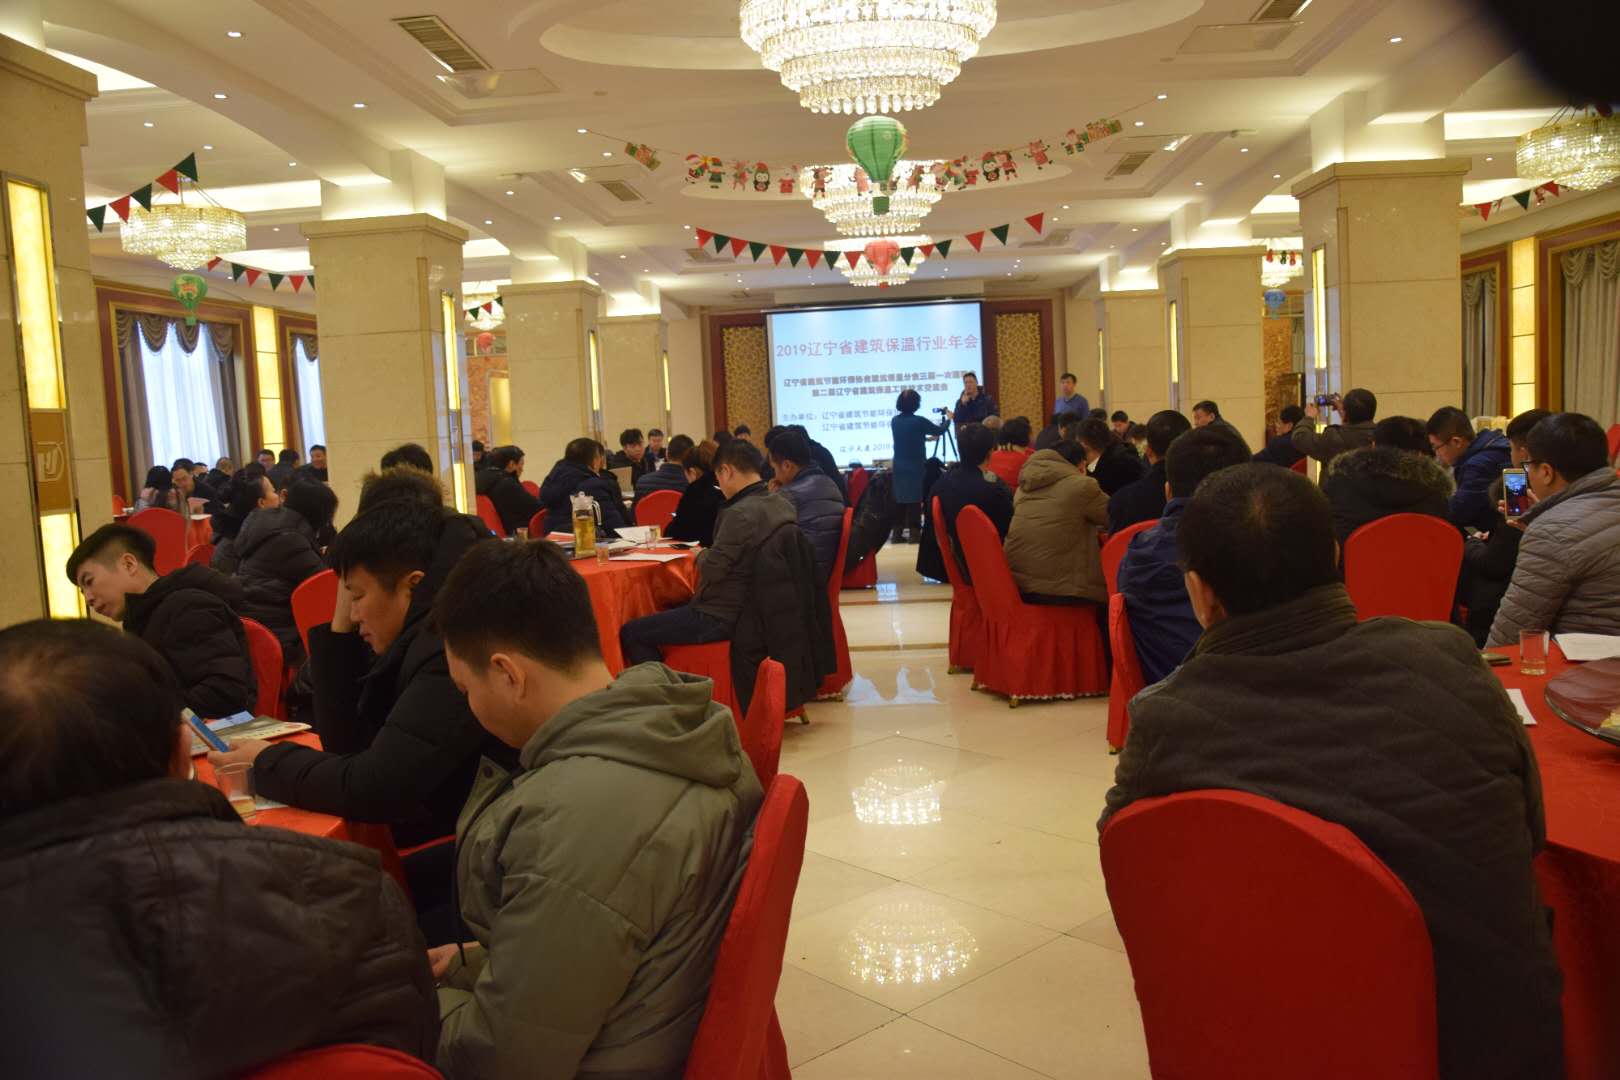 東北建材網參與舉辦的2019遼寧省建筑保溫年會圓滿召開